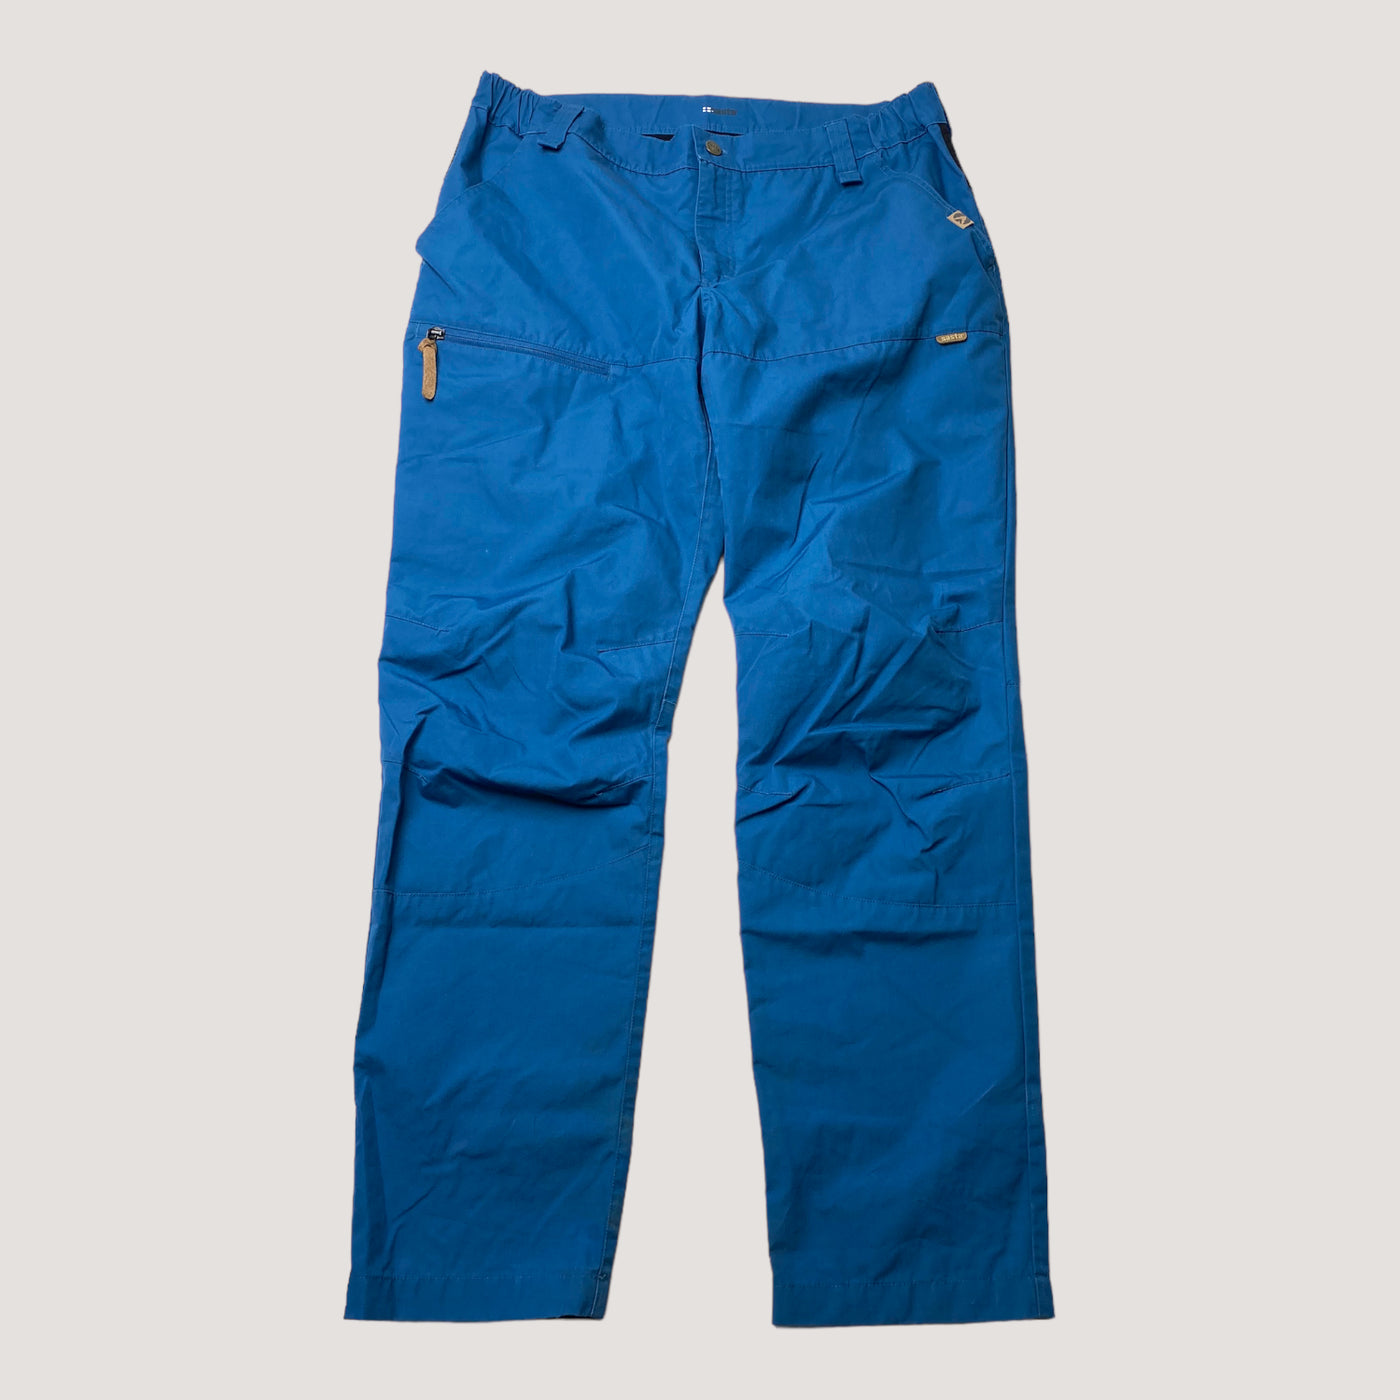 Sasta outdoor pants, blue | man 46D